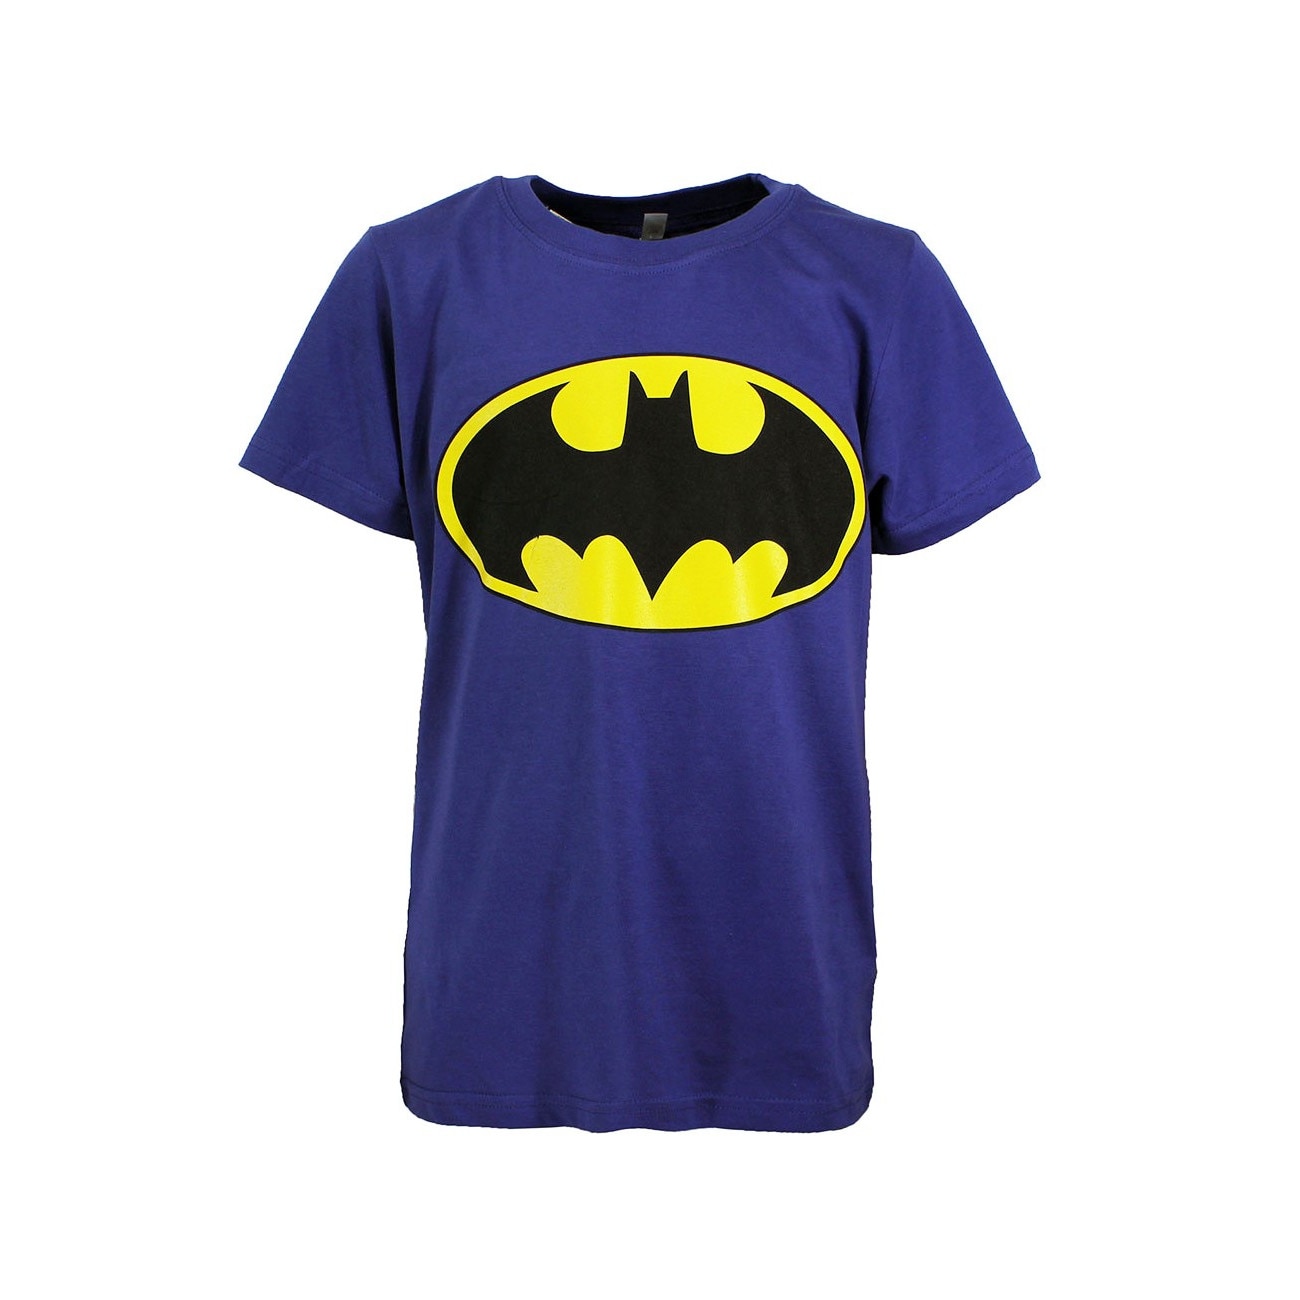 Batman t. Детская футболка Бэтмэн. Детская футболка DC Comic. Футболка Batman комикс. Бэтмен футболка синяя.